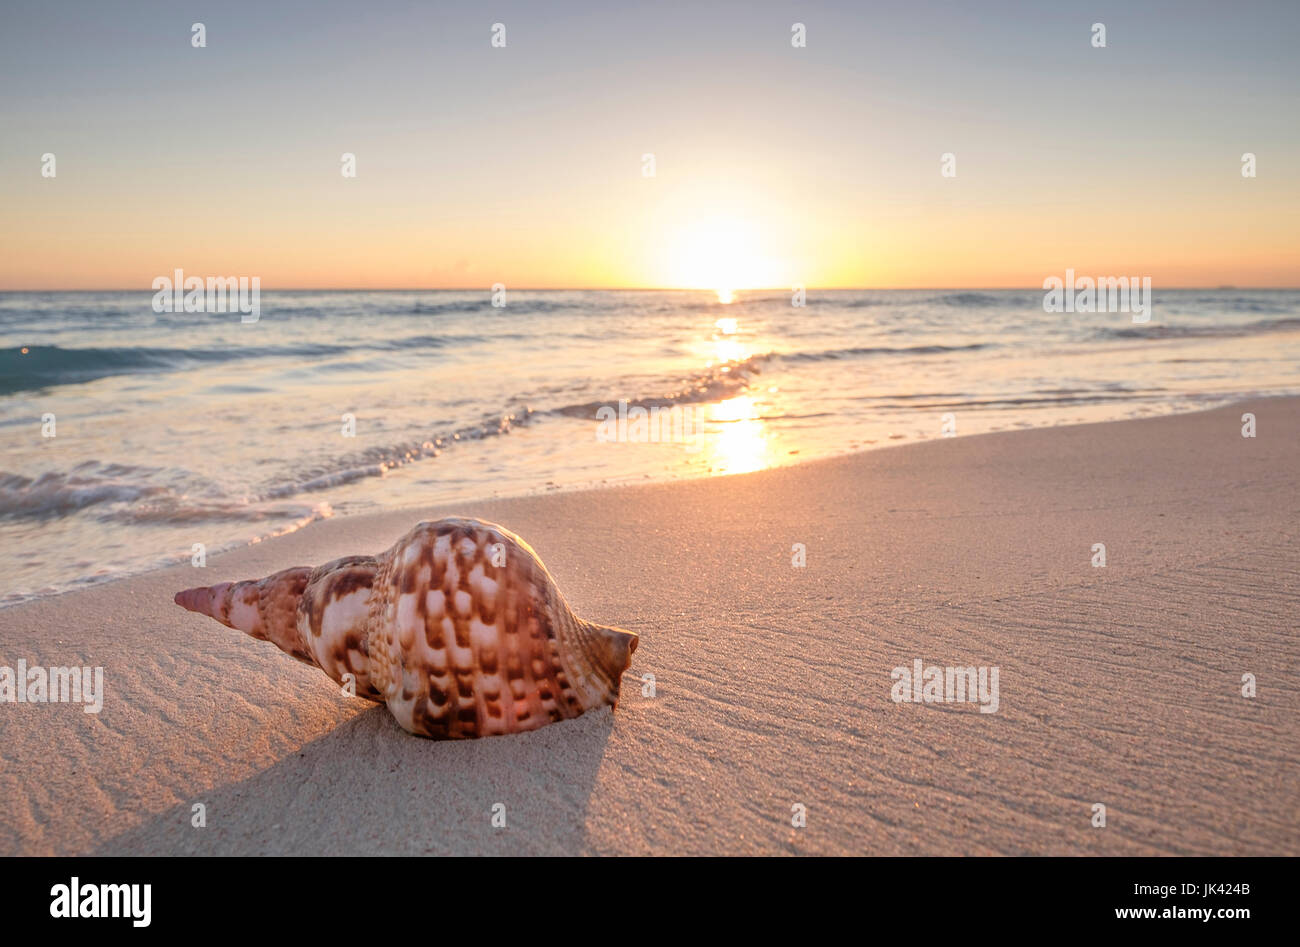 Seashell on beach at sunset Stock Photo